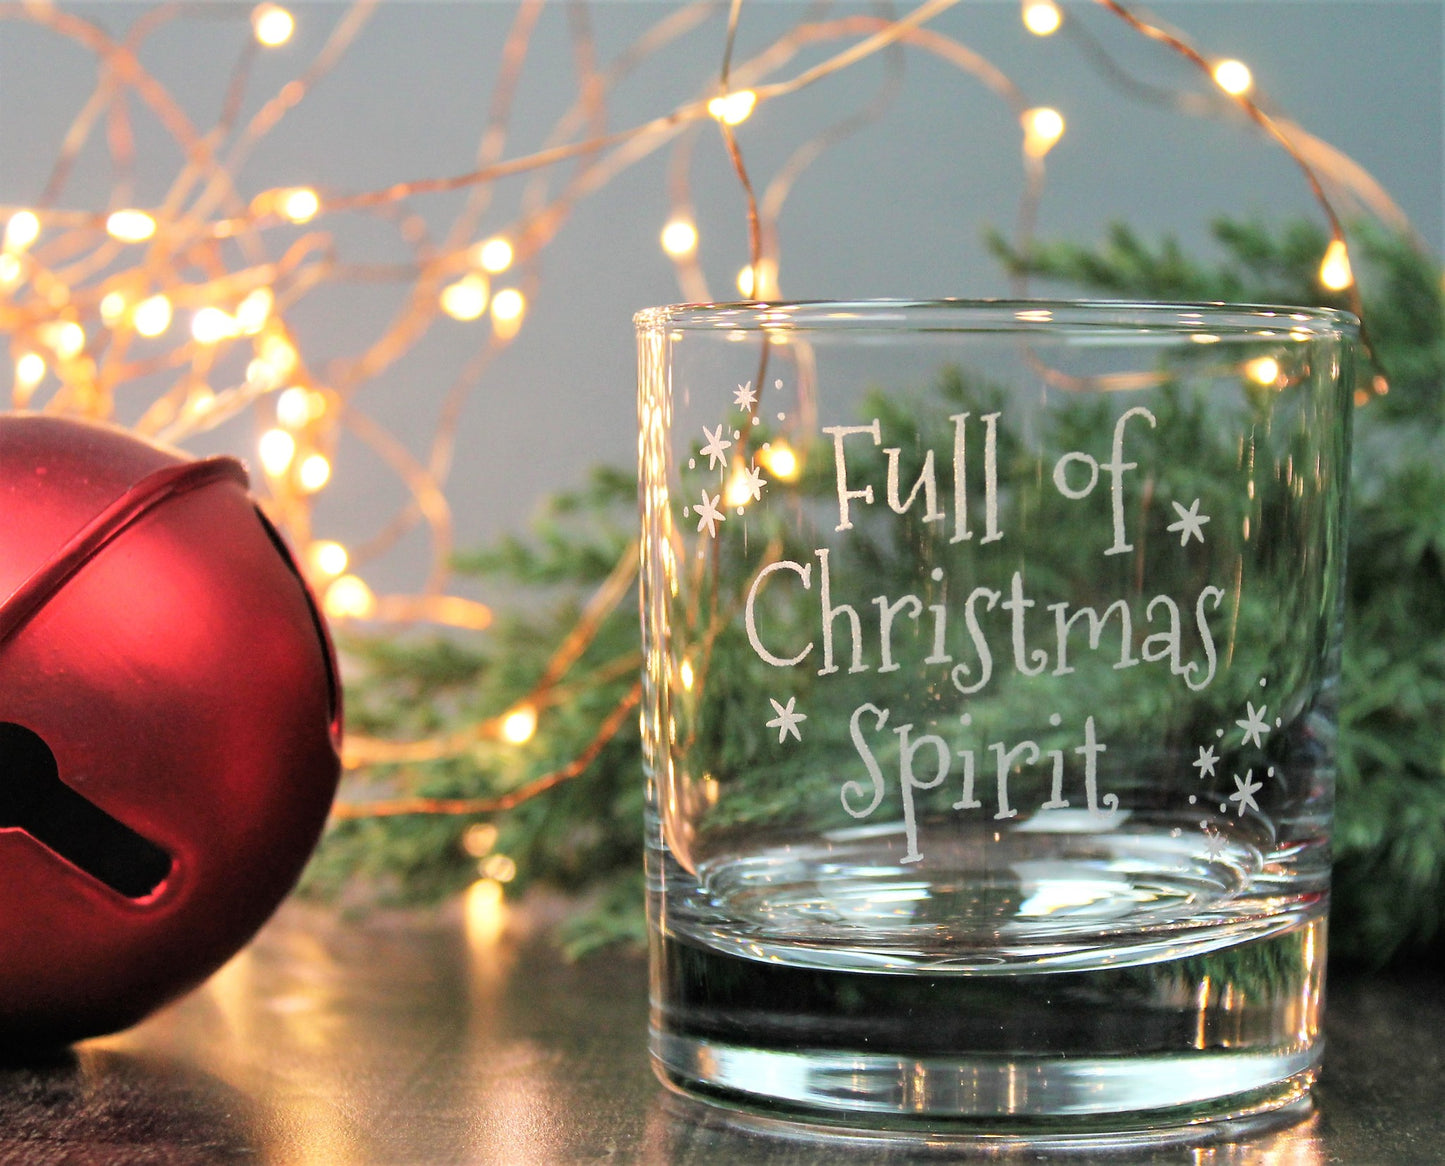 Whisky lover - engraved glass - full of Christmas spirit 